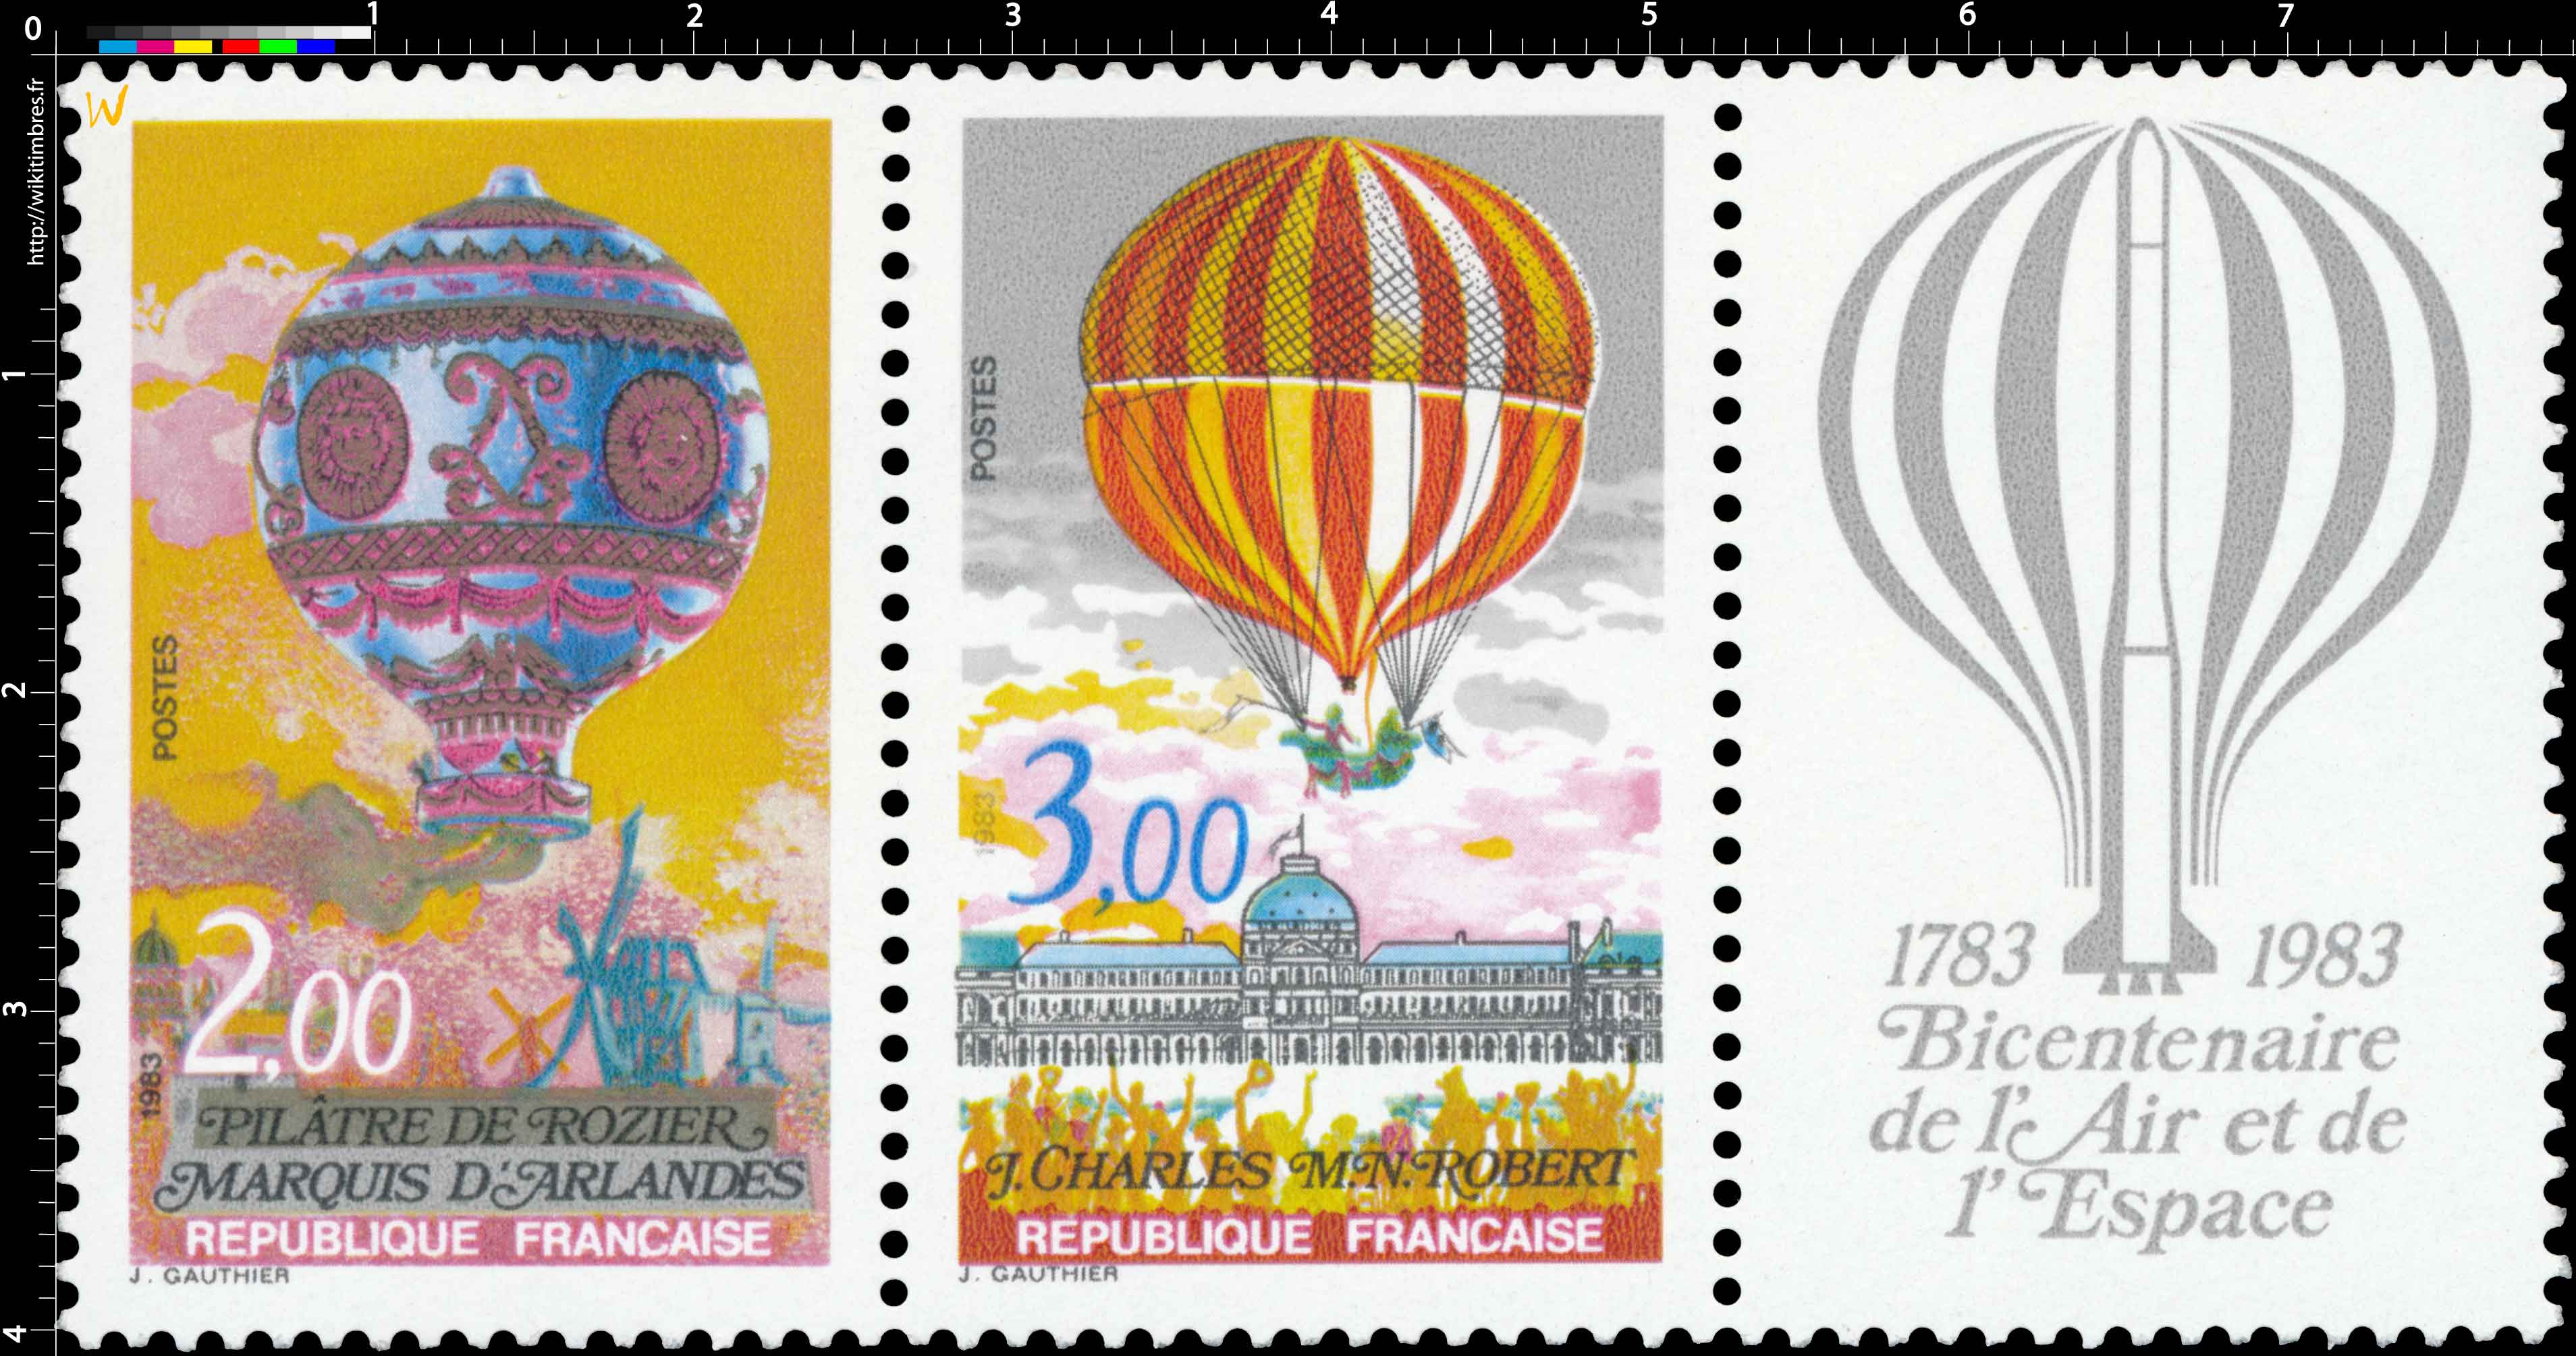 1783 1983 Bicentenaire de l'Air et de l'Espace